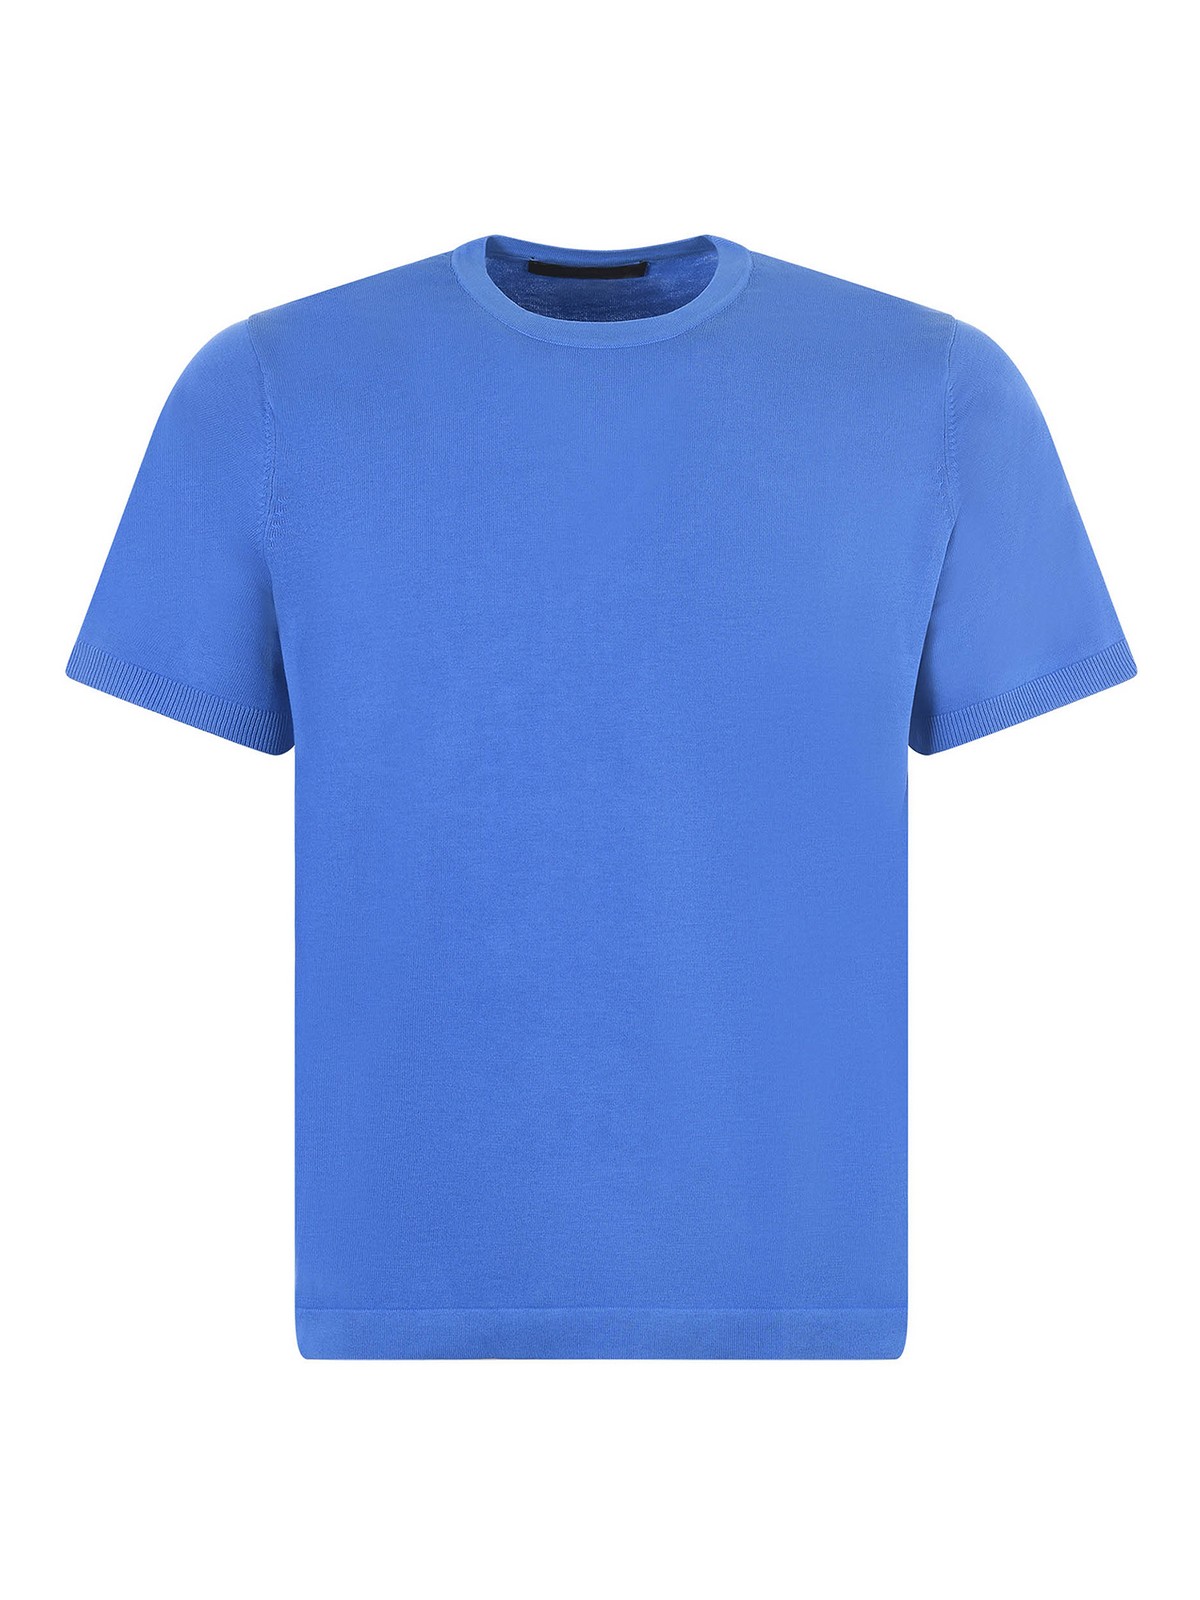 Jeordie's Jeordies T-shirt In Blue